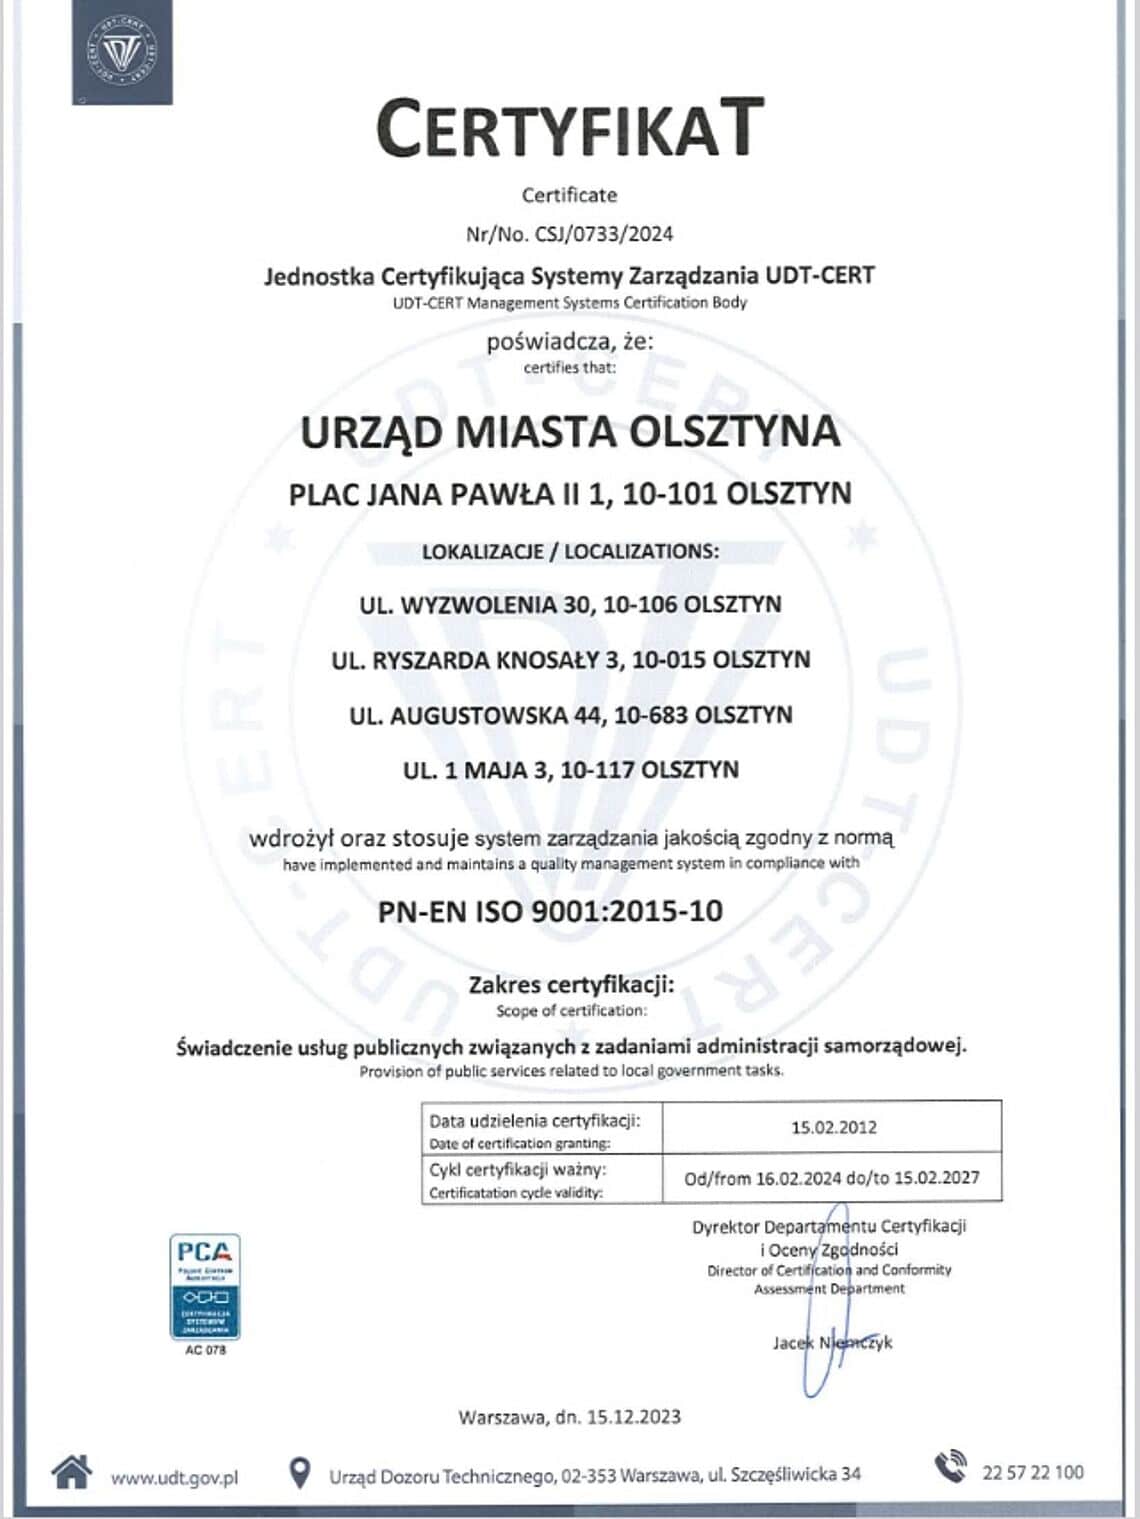 Olsztyński urząd utrzymuje wysoki standard – certyfikat ISO ponownie przyznany Urząd Miasta Olsztyna Urząd Miasta Olsztyna